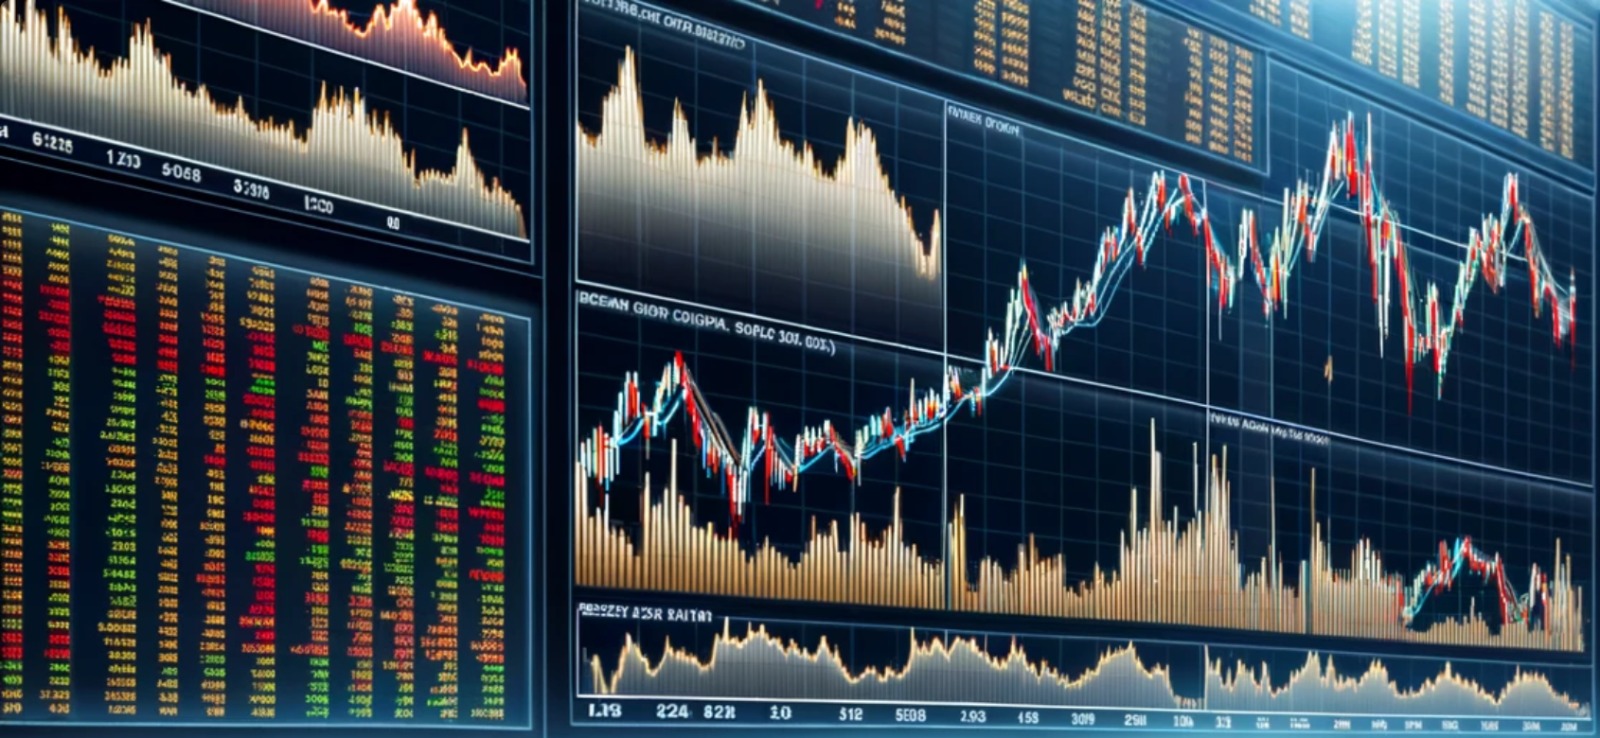 info bourse actualite marches financiers boursier analyse technique graphique